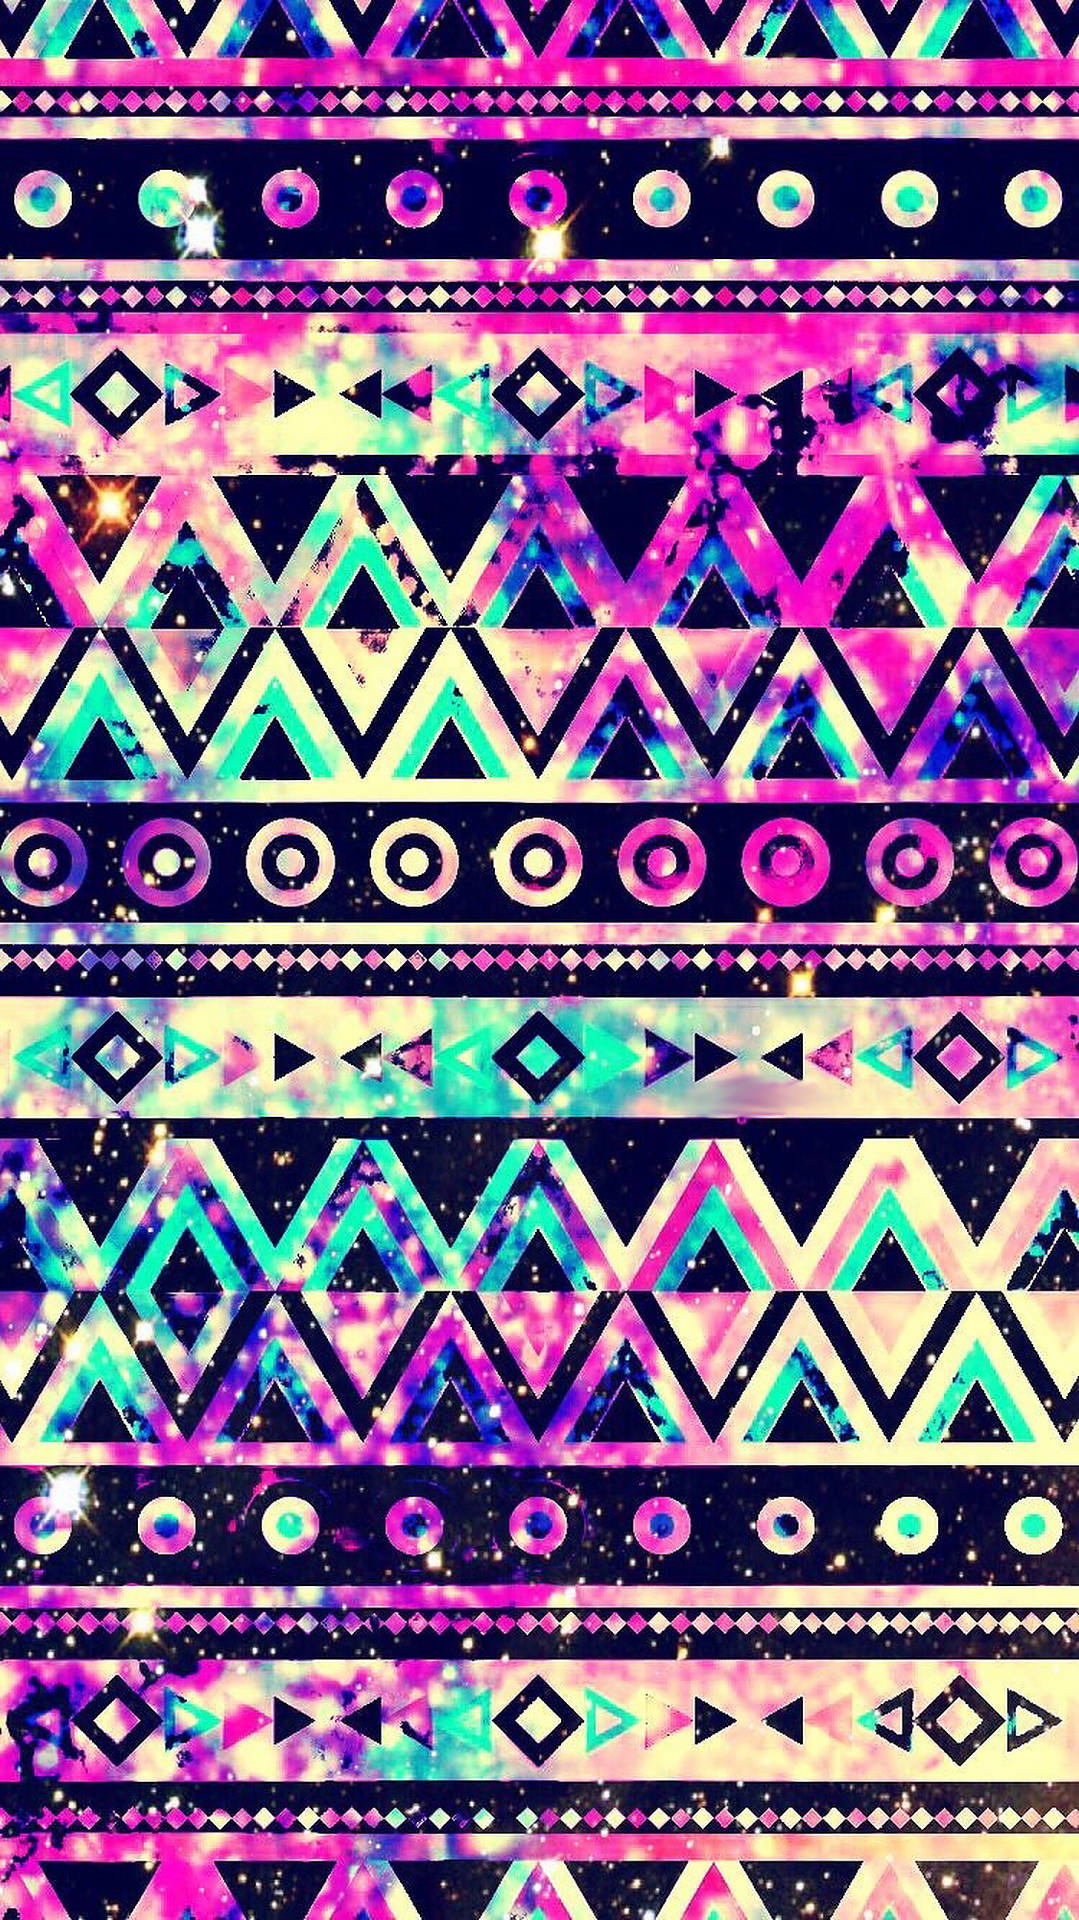 Galaxieazteken Tribal Muster Wallpaper